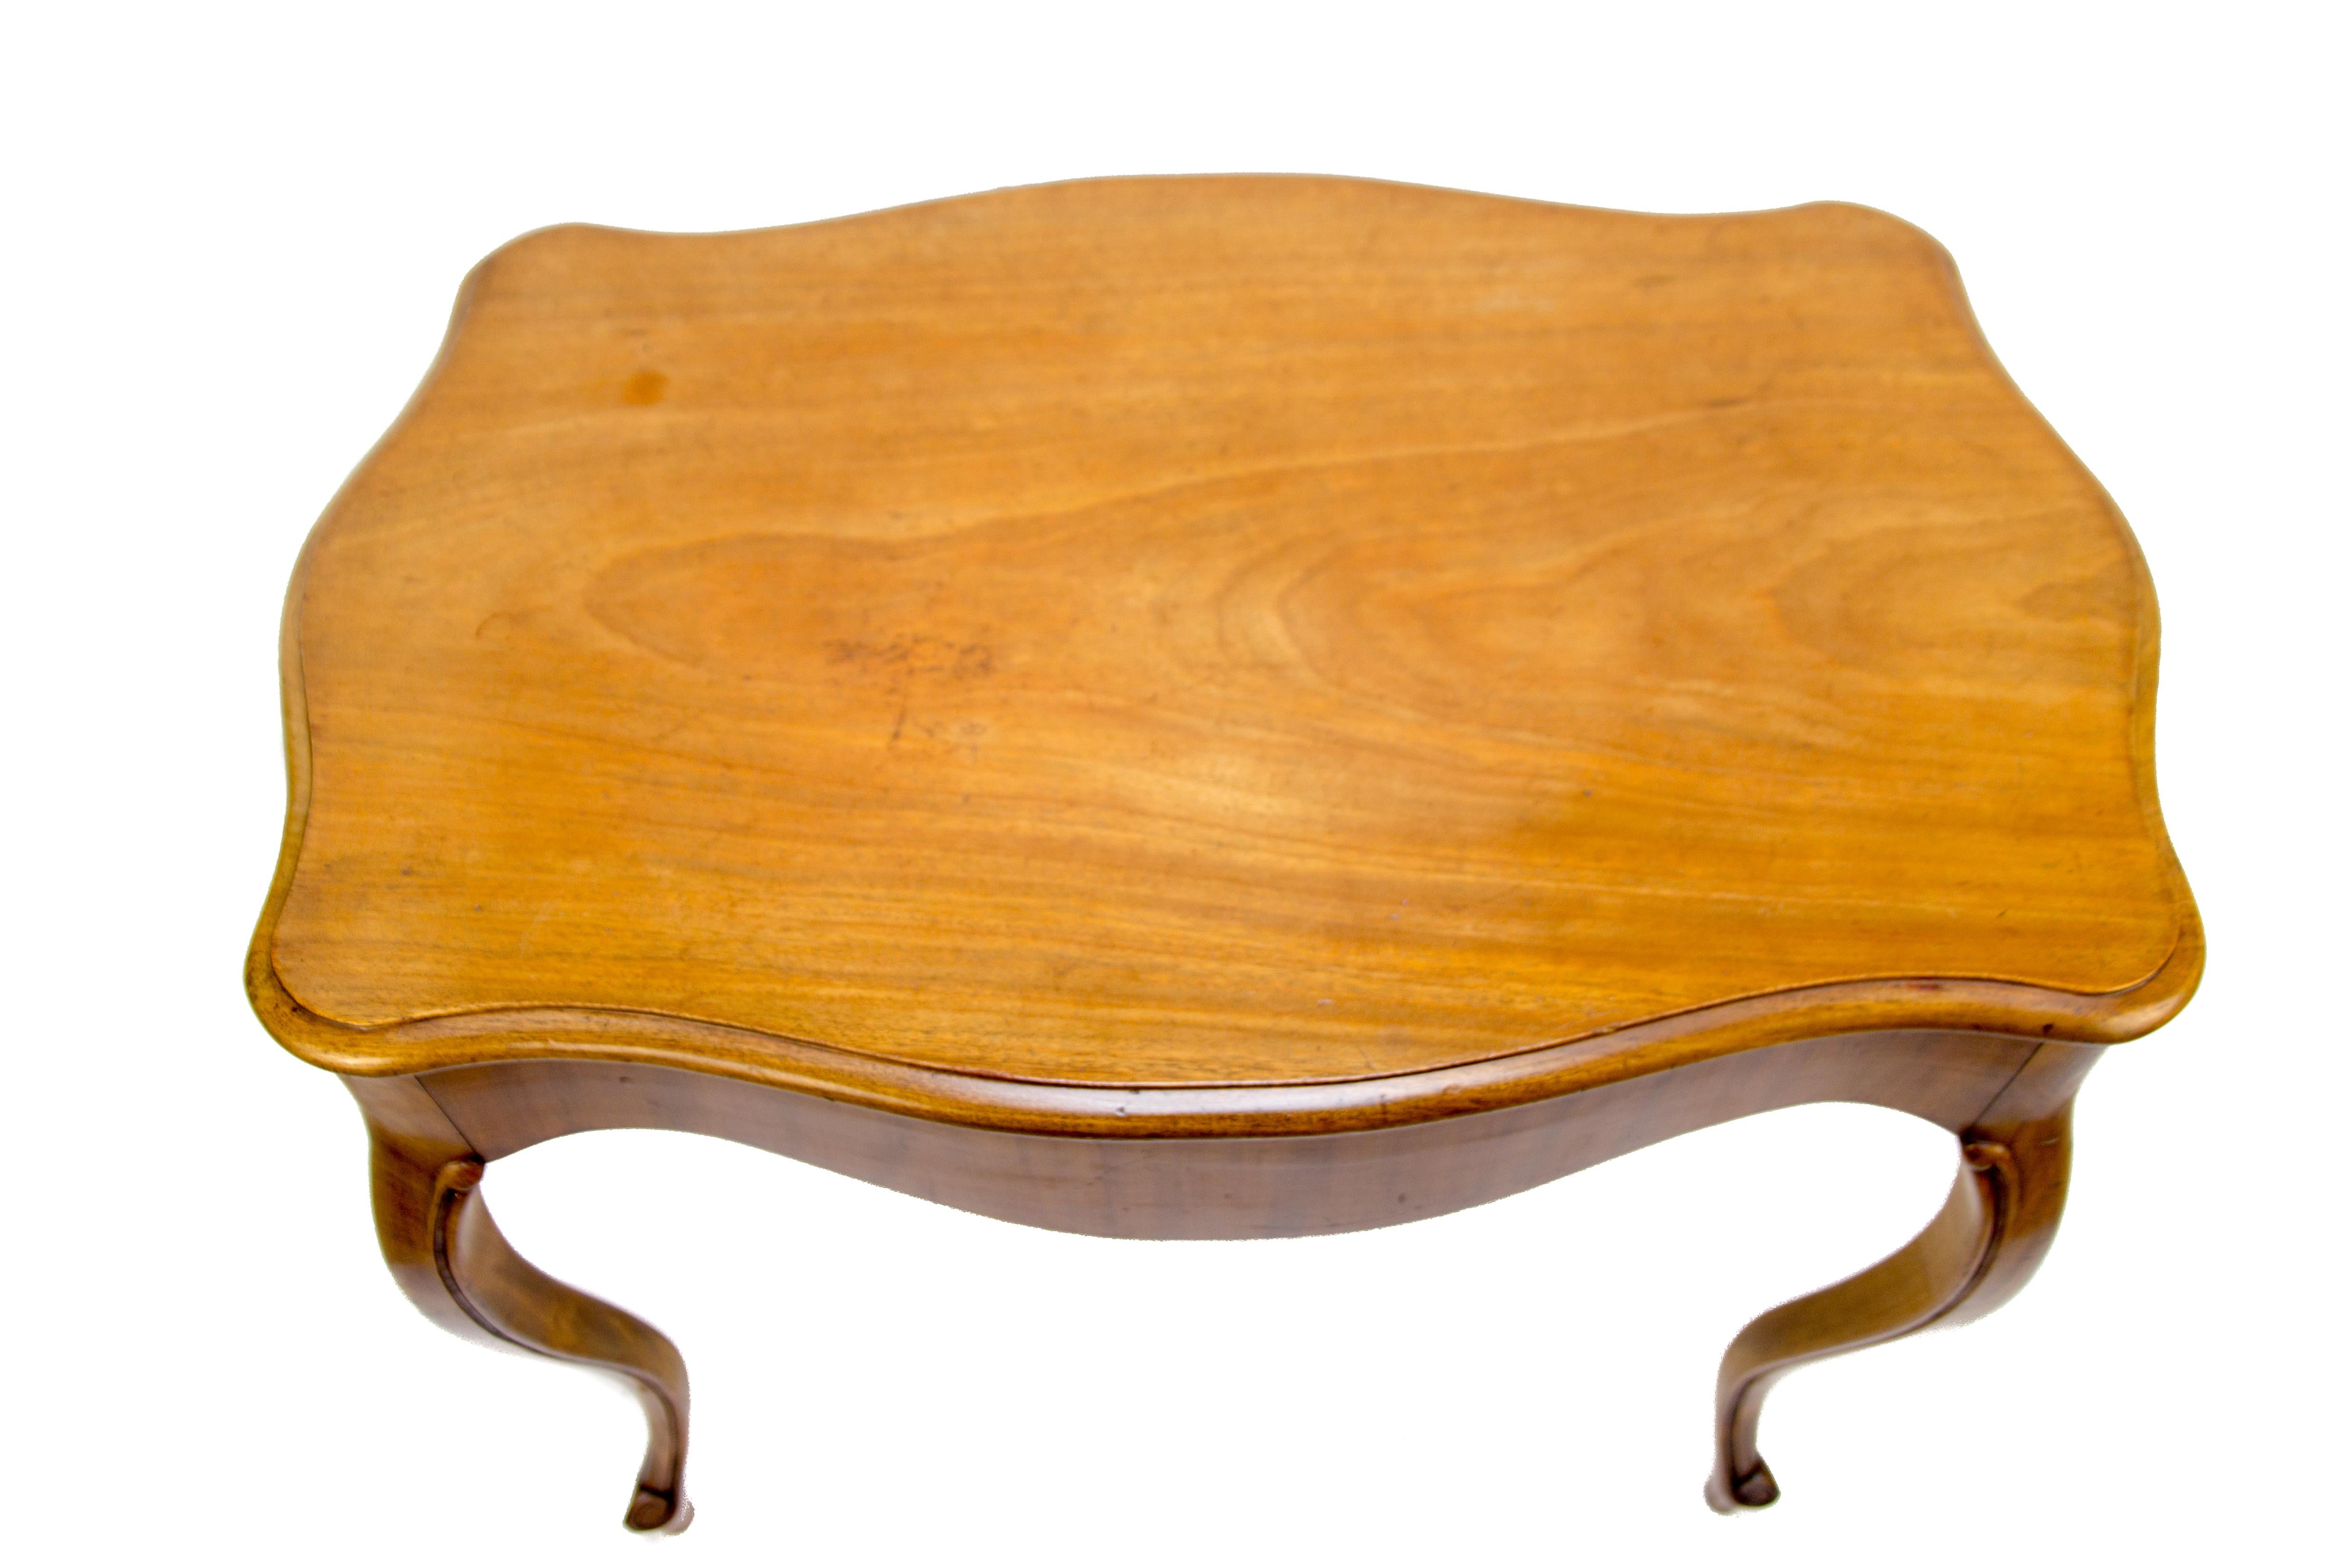 Französischer Tisch im Louis-XV-Stil aus Nussbaumholz aus den 1930er Jahren.
Abmessungen:
Höhe 79 cm / 31.1 in; Breite 61 cm / 24.01 in; Länge 91 cm / 35.82 in.
 